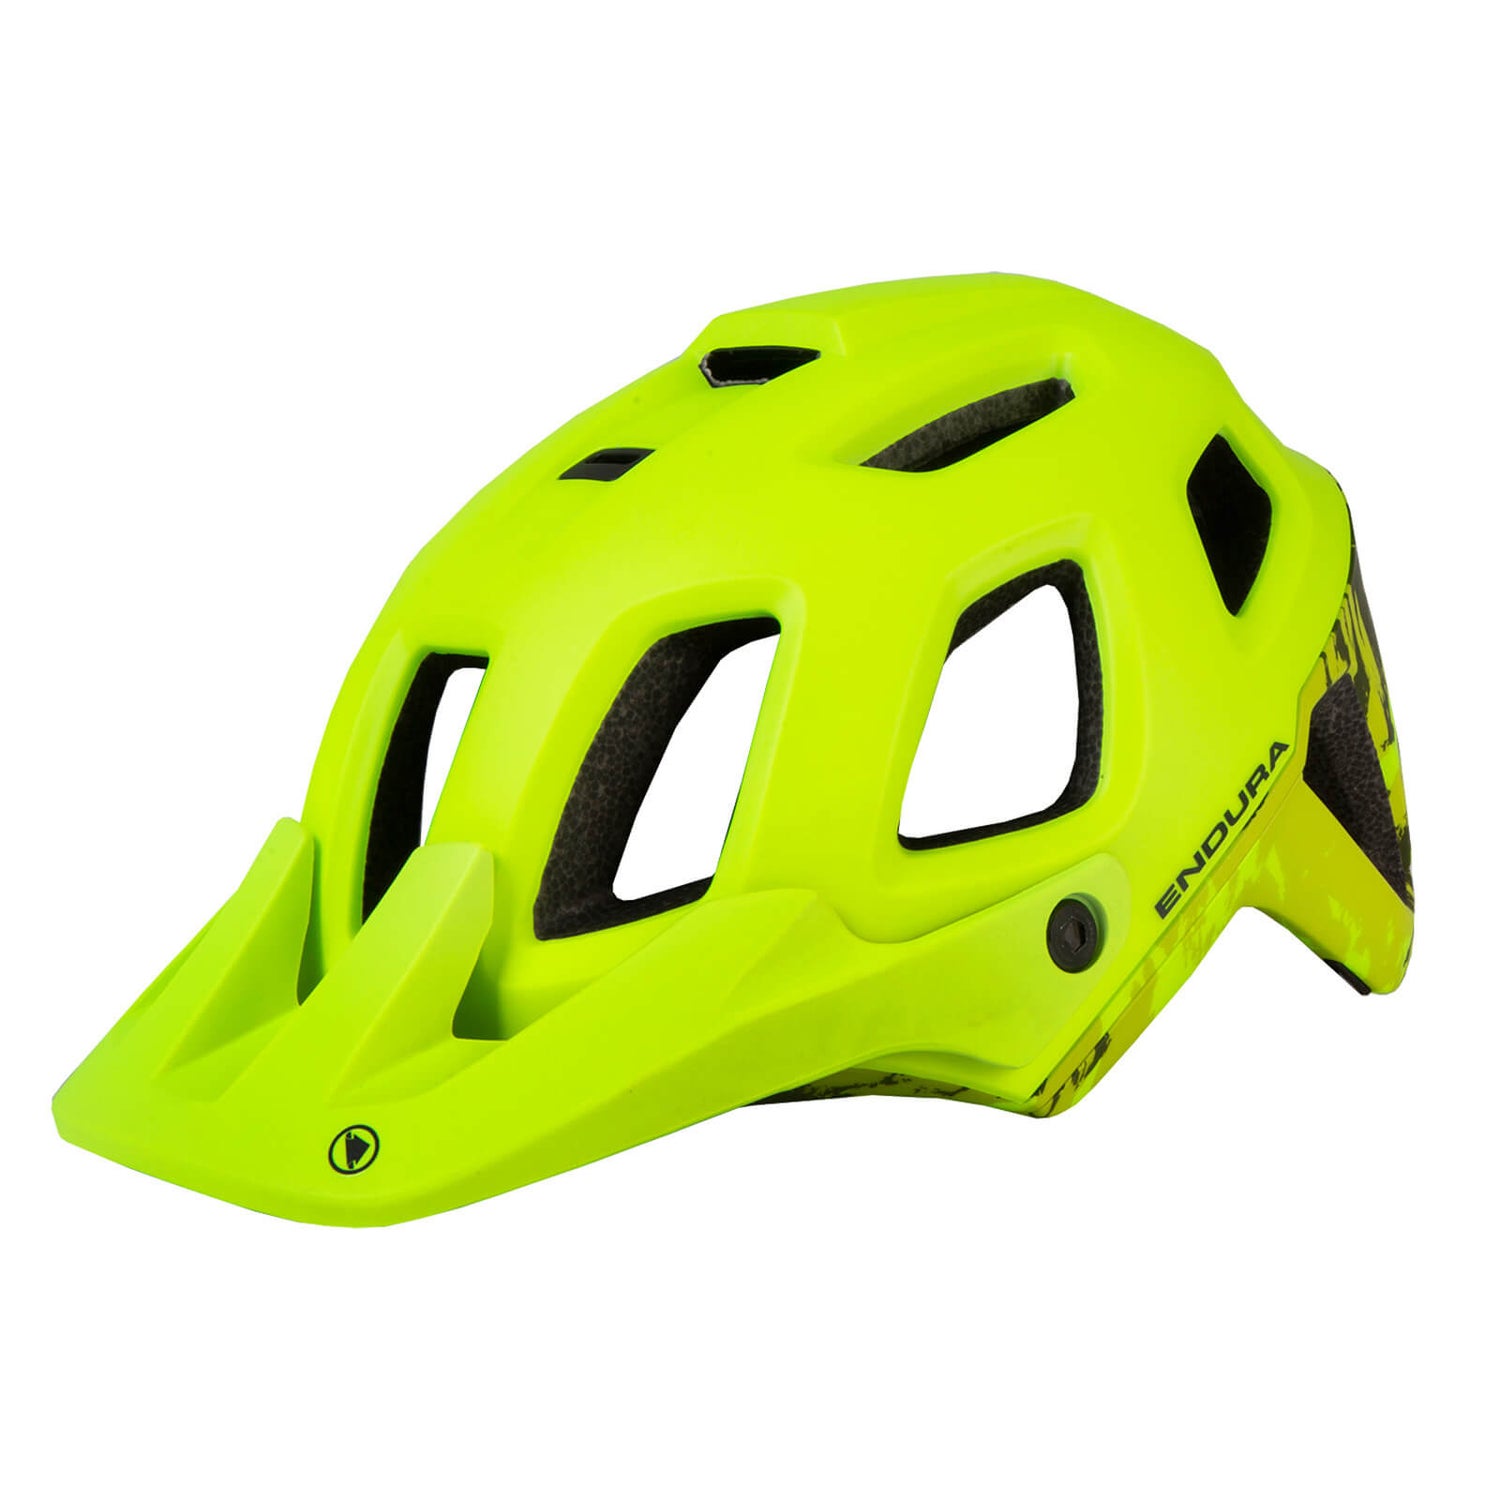 Men's SingleTrack Helmet II - Hi-Viz Yellow